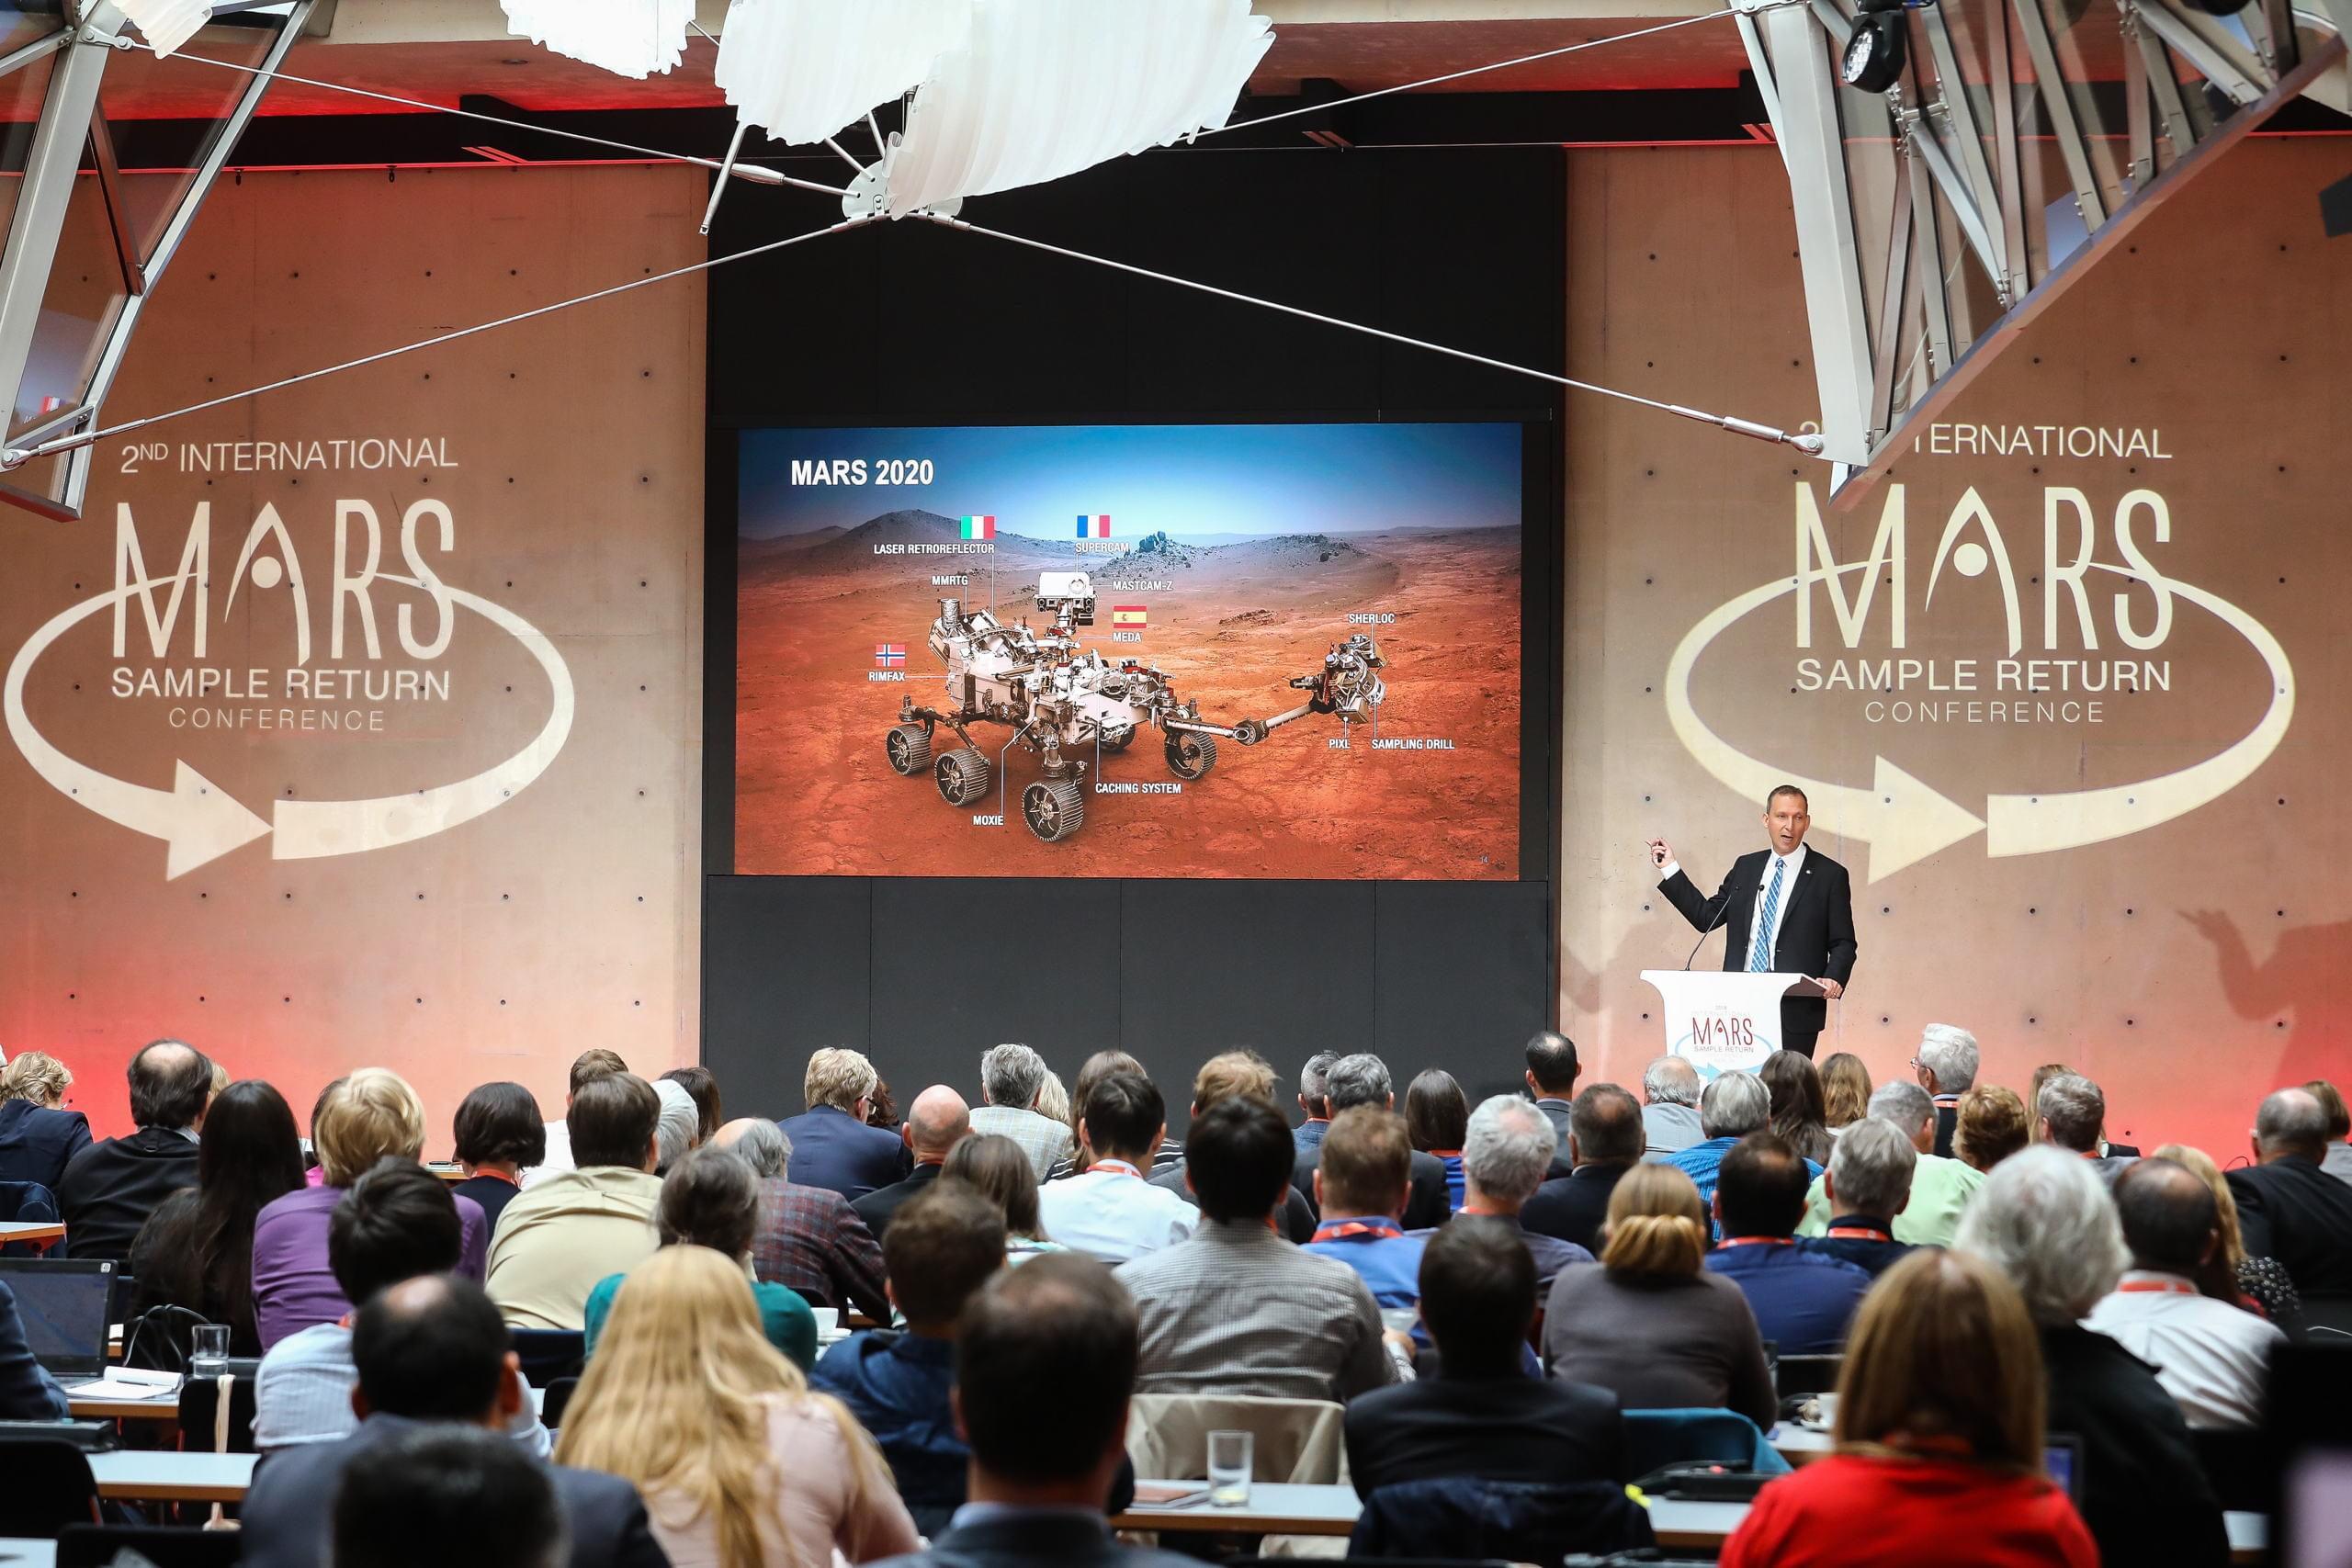 Publikums-Sicht auf die Bühne der ESA/NASA Konferenz